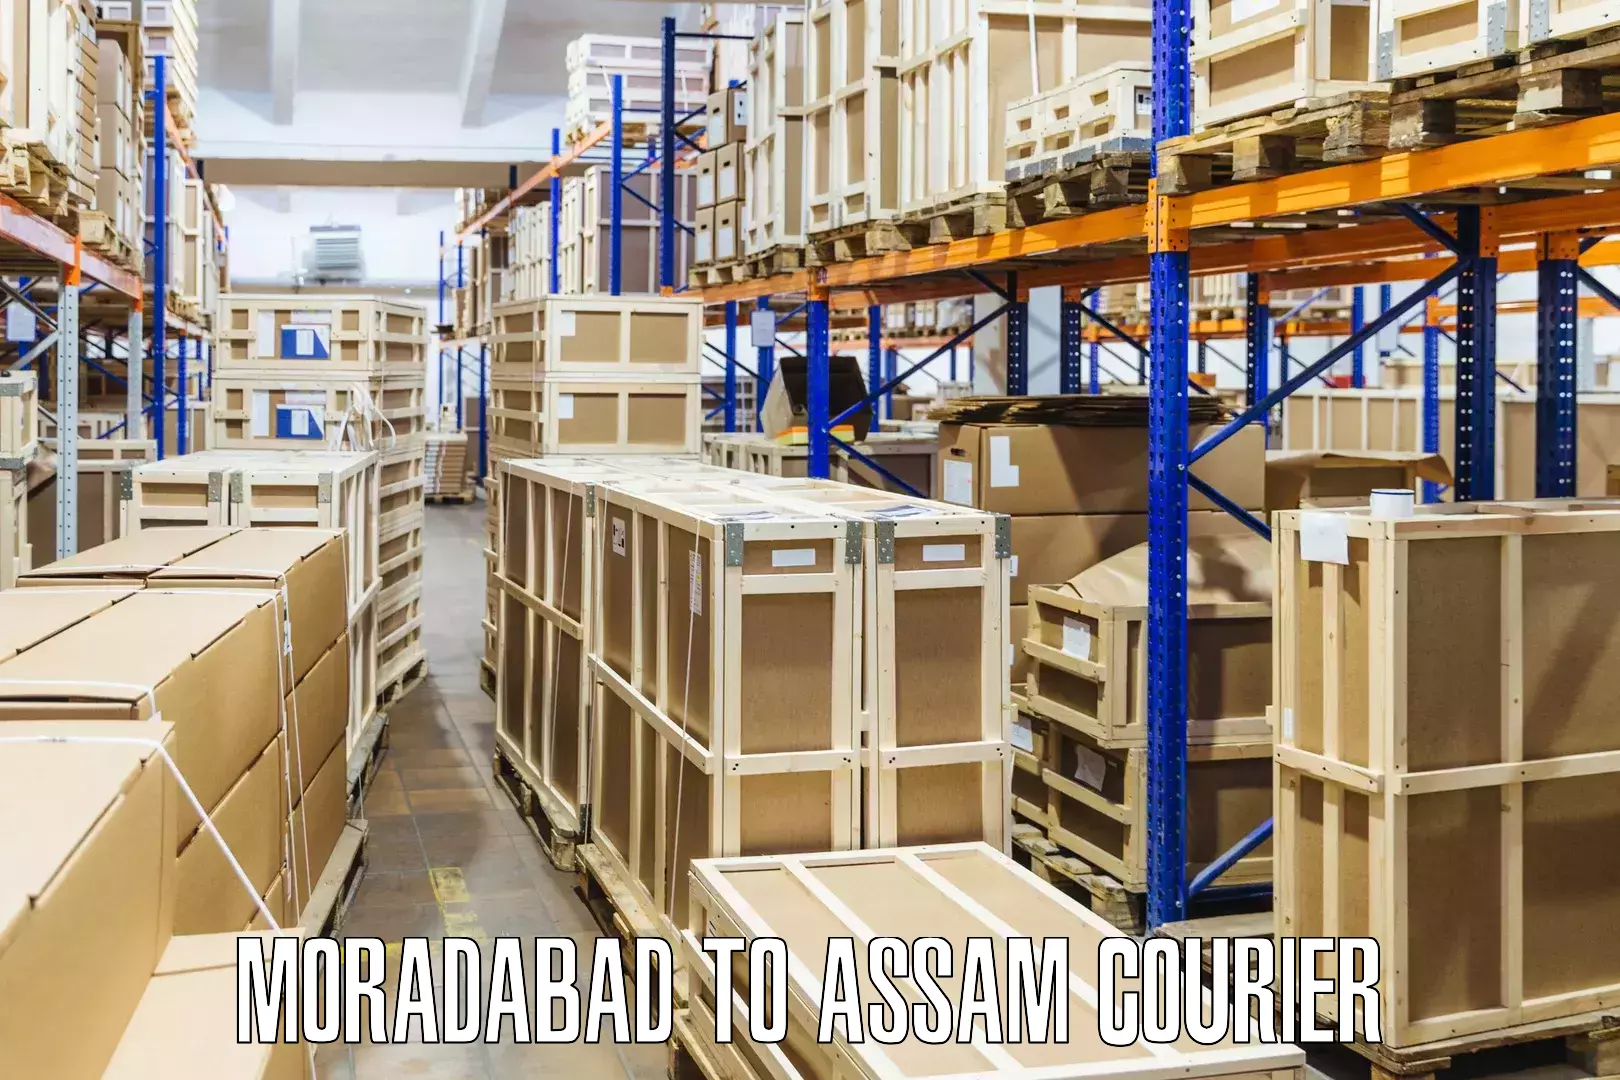 Courier service partnerships Moradabad to Kusumtola